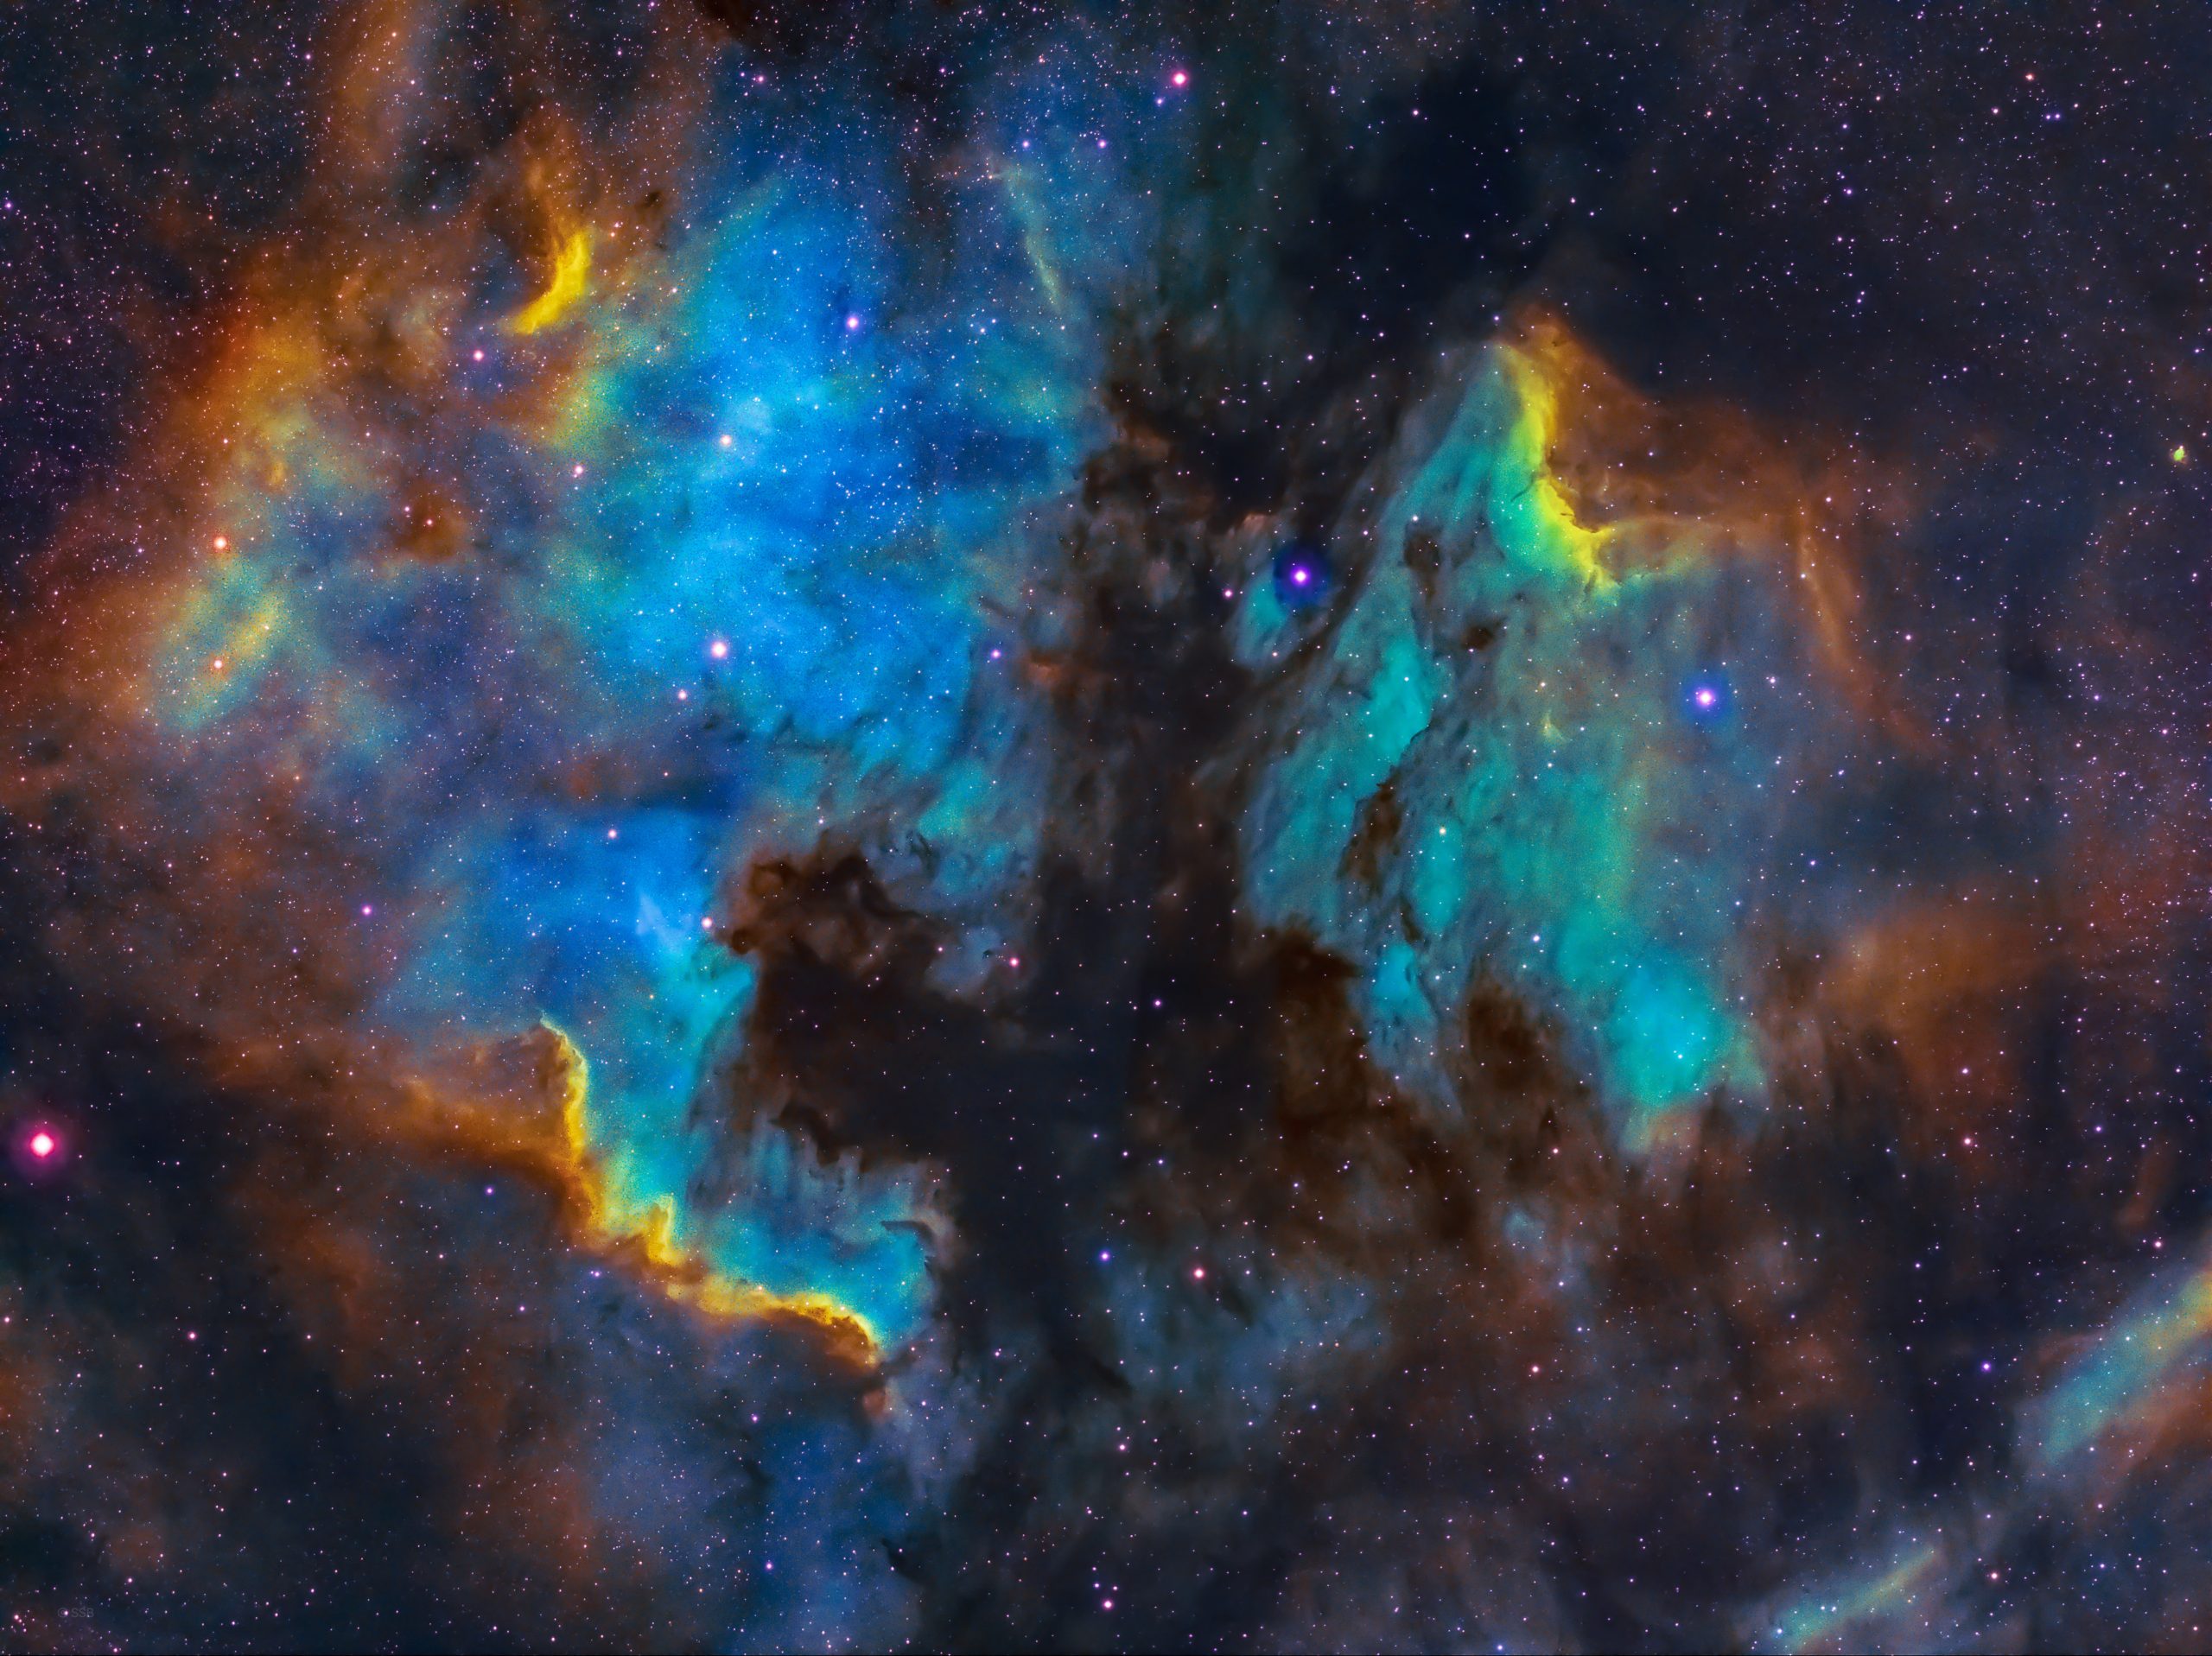 Η NASA αποκάλυψε τα αληθινά χρώματα του σύμπαντος (φωτο)